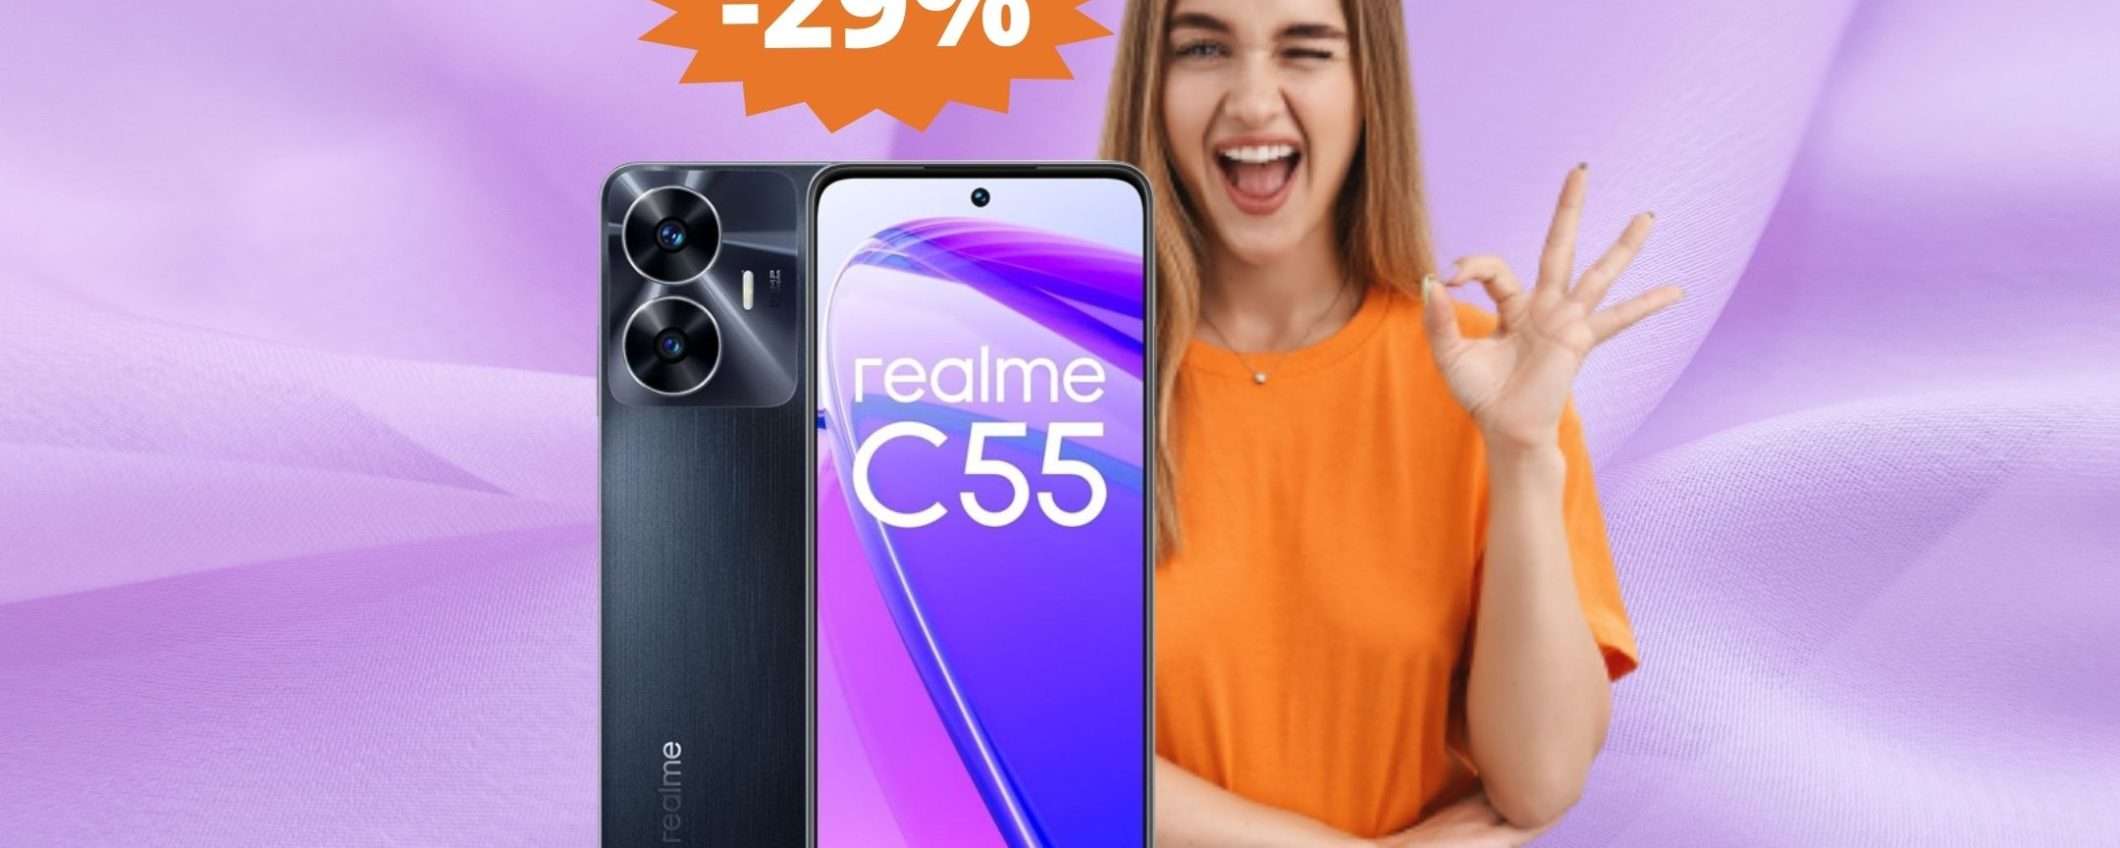 Realme C55: lo smartphone essenziale in SUPER sconto del 29%